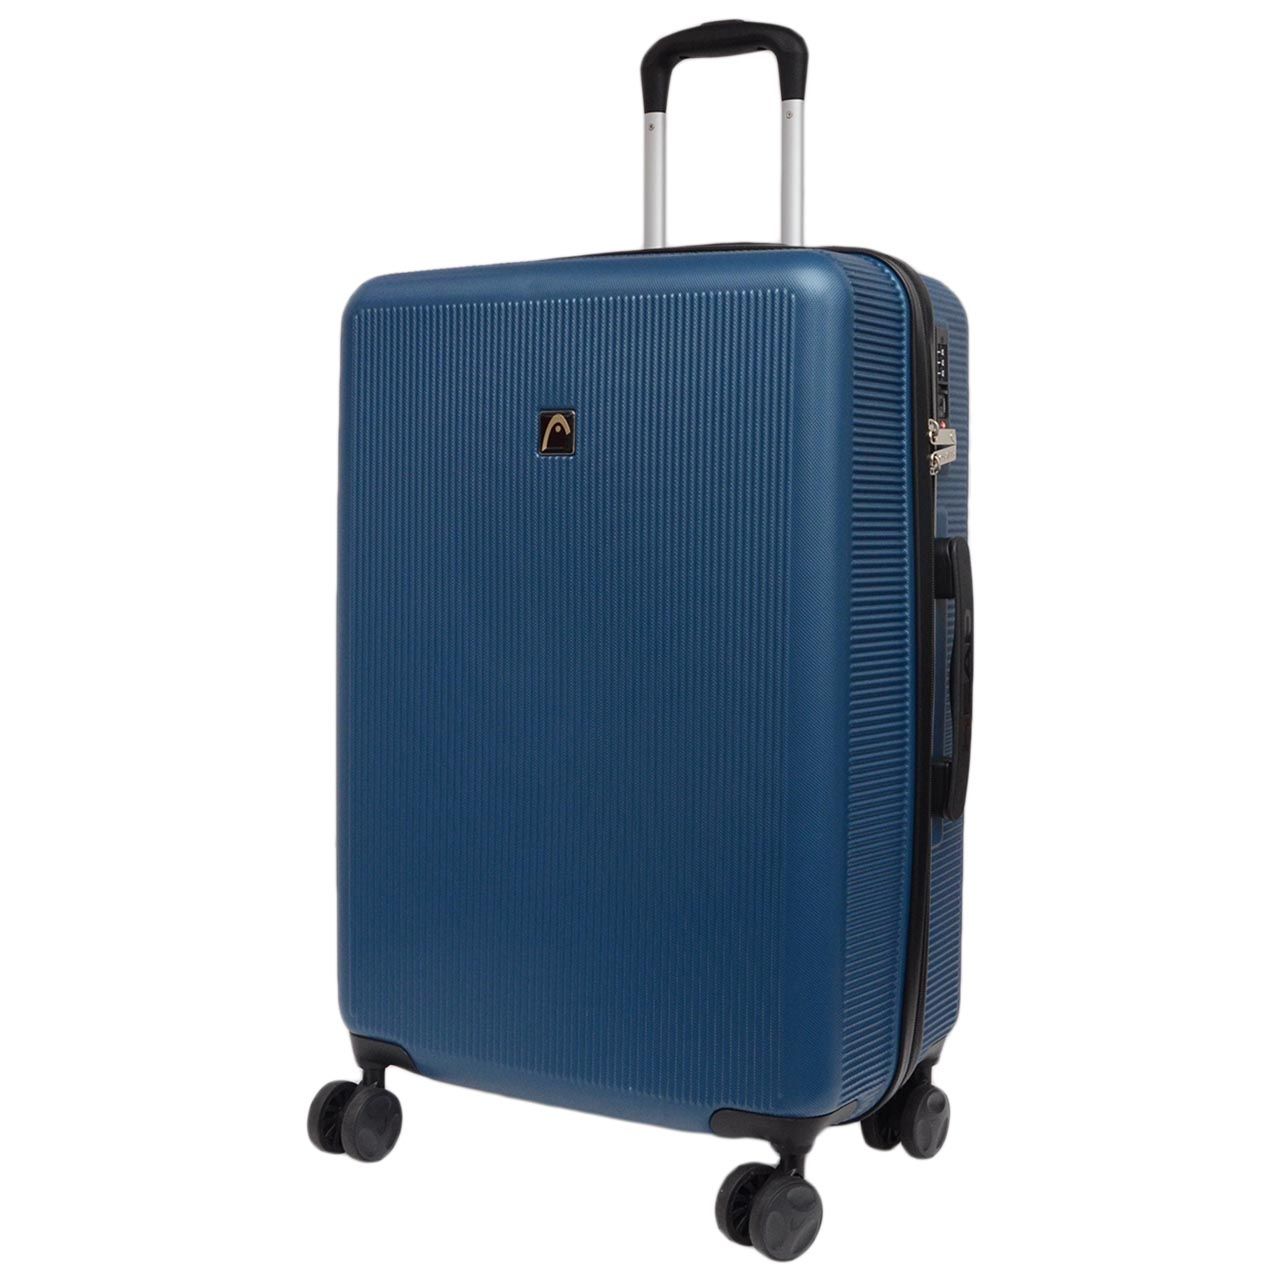 چمدان هد مدل HL 006 سایز متوسط -  - 4